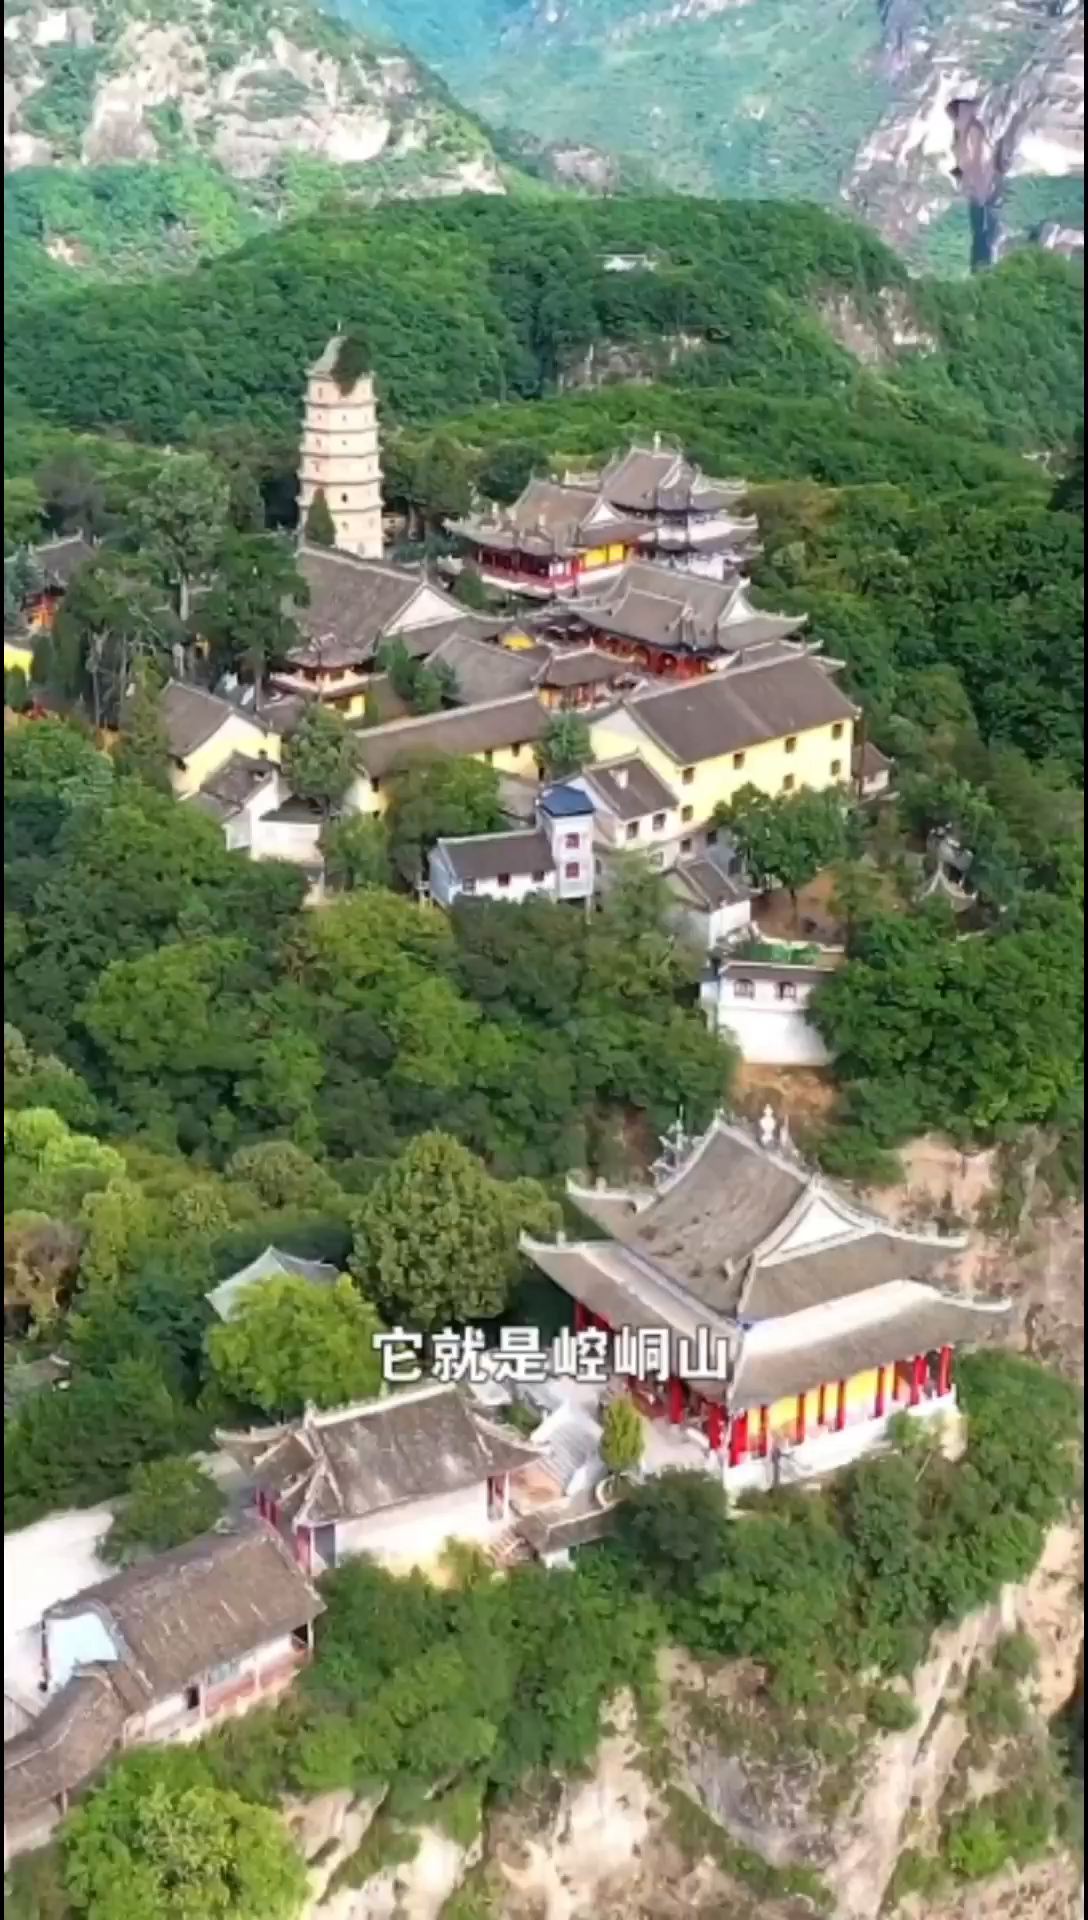 崆峒山，位于甘肃省平凉市崆峒区西郊15千米，自古就有“中华道教第一山”的美誉，是丝绸之路西出关中之要